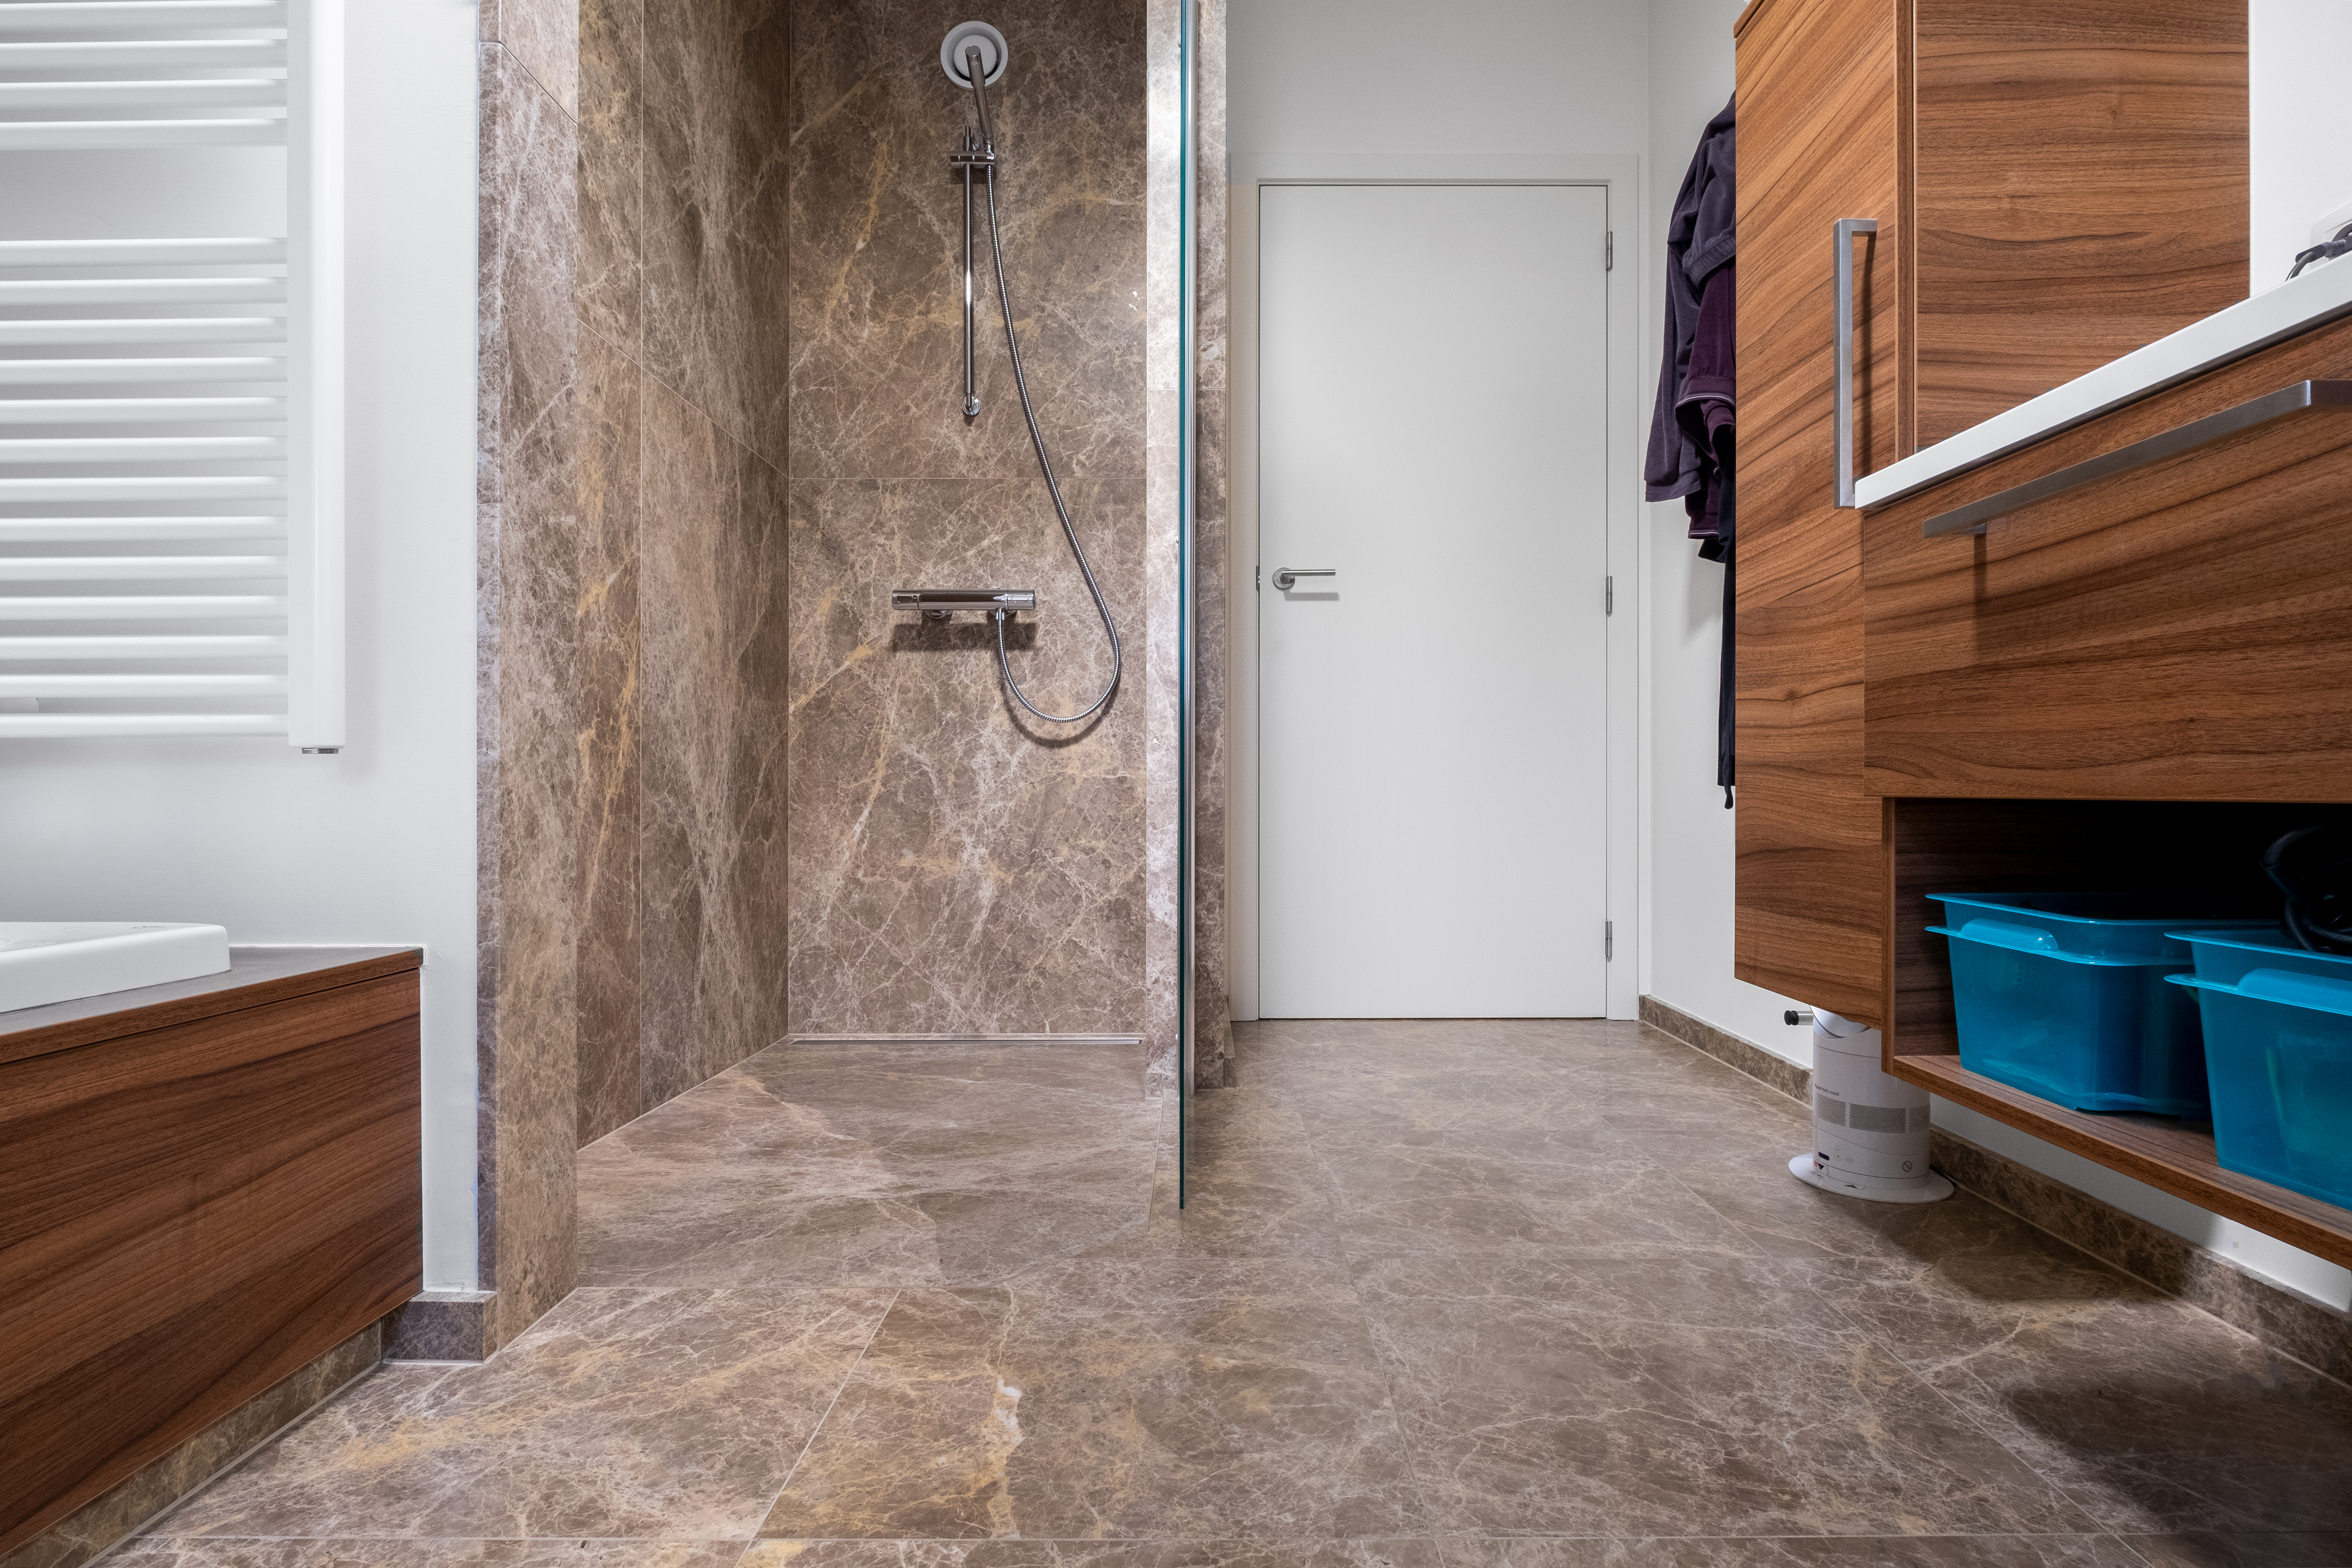 Kalkaanslag in badkamer | Natuursteen-renovatie.be